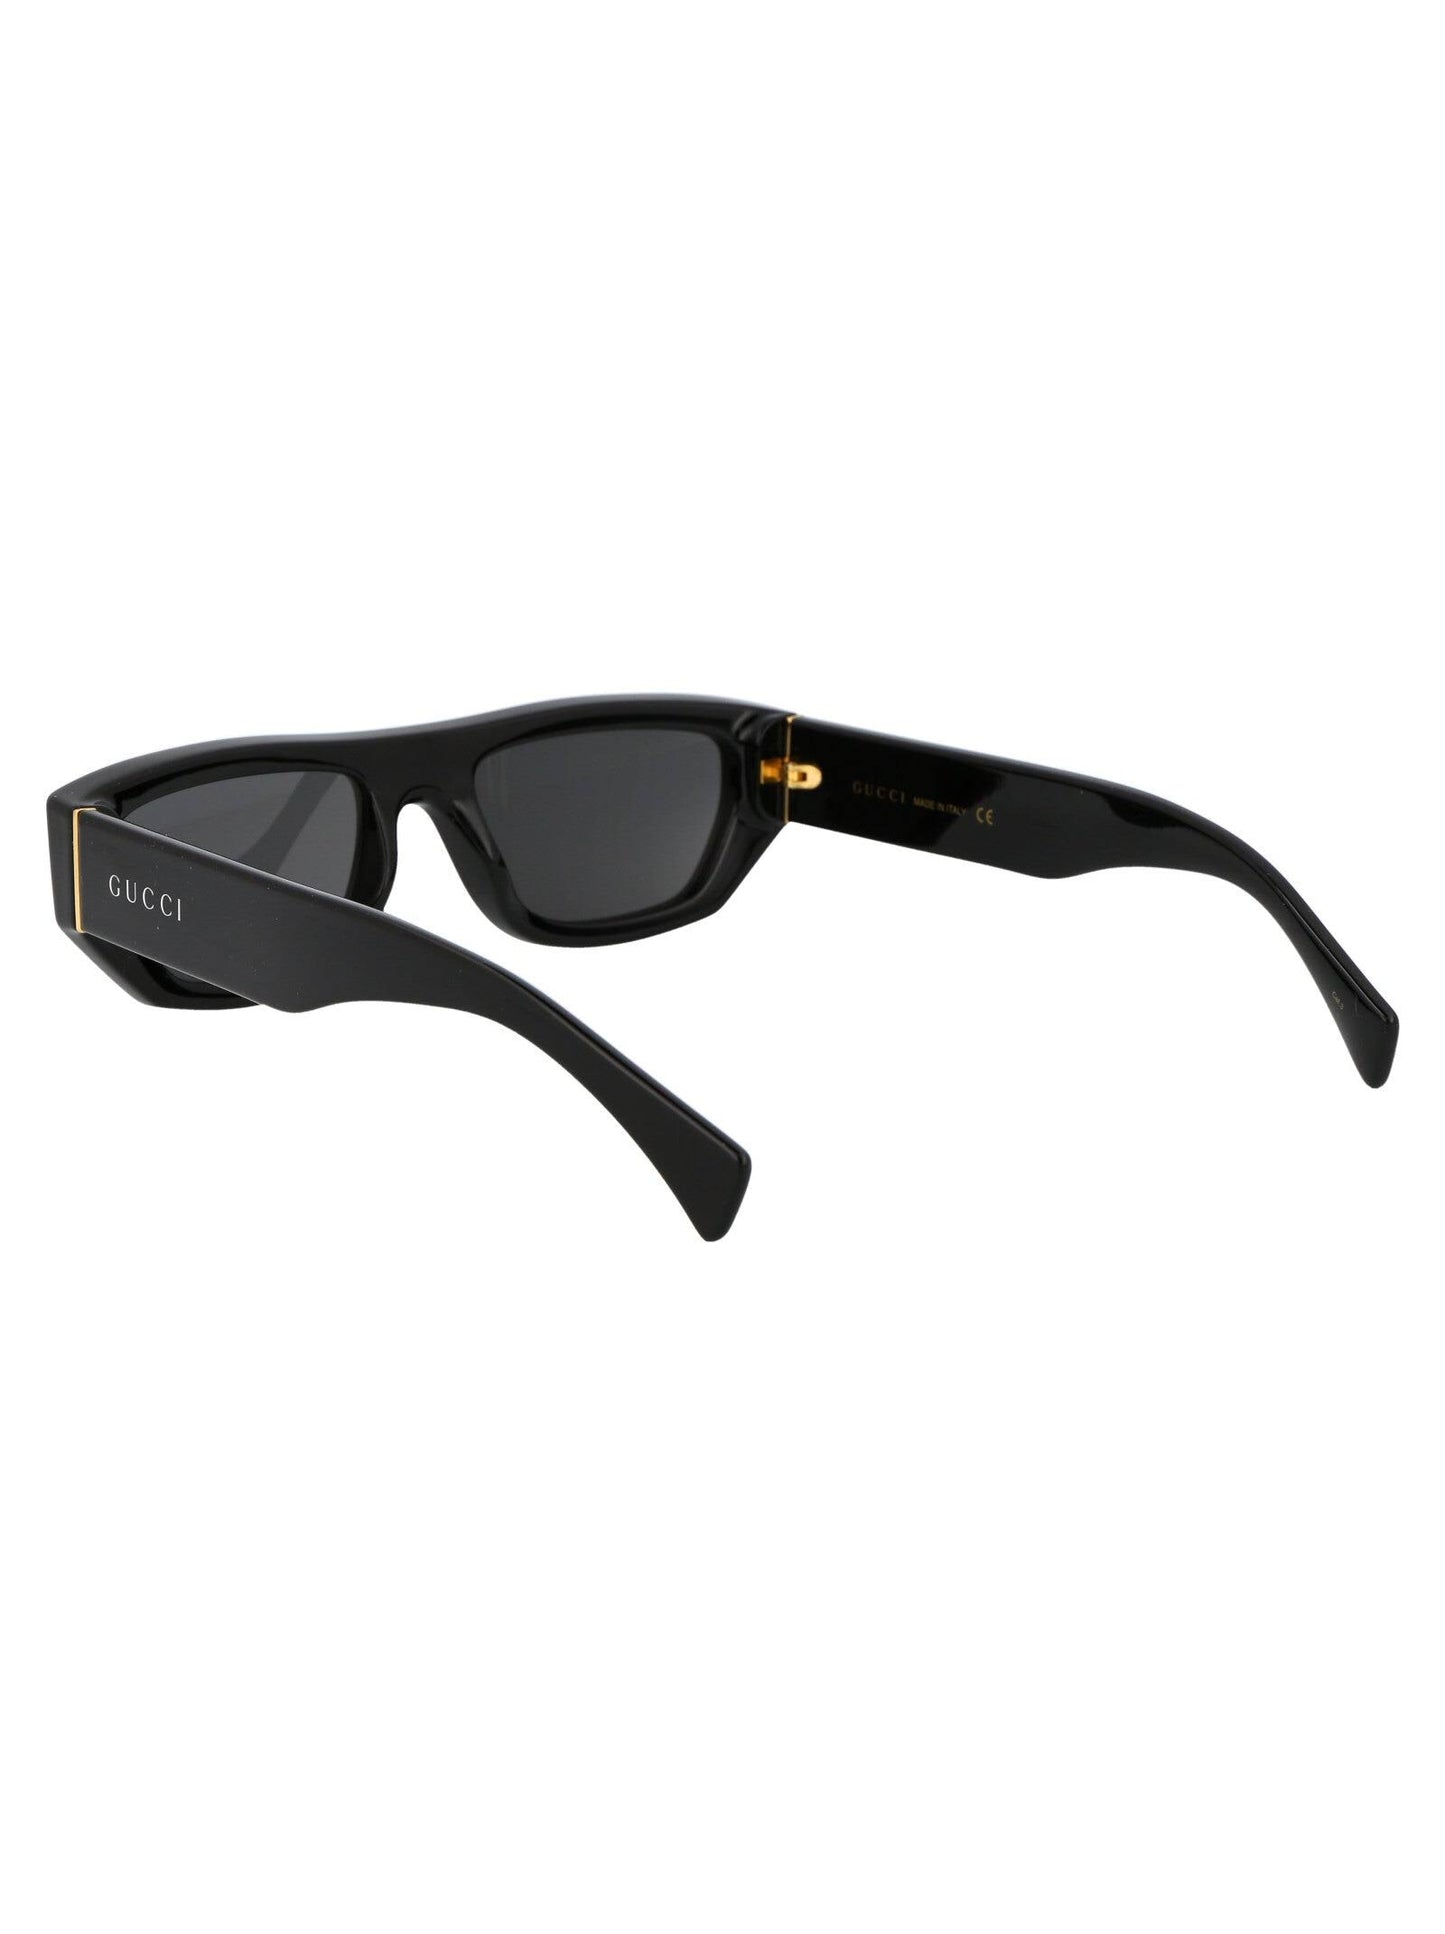 Gucci GG1134S-004 53mm New Sunglasses